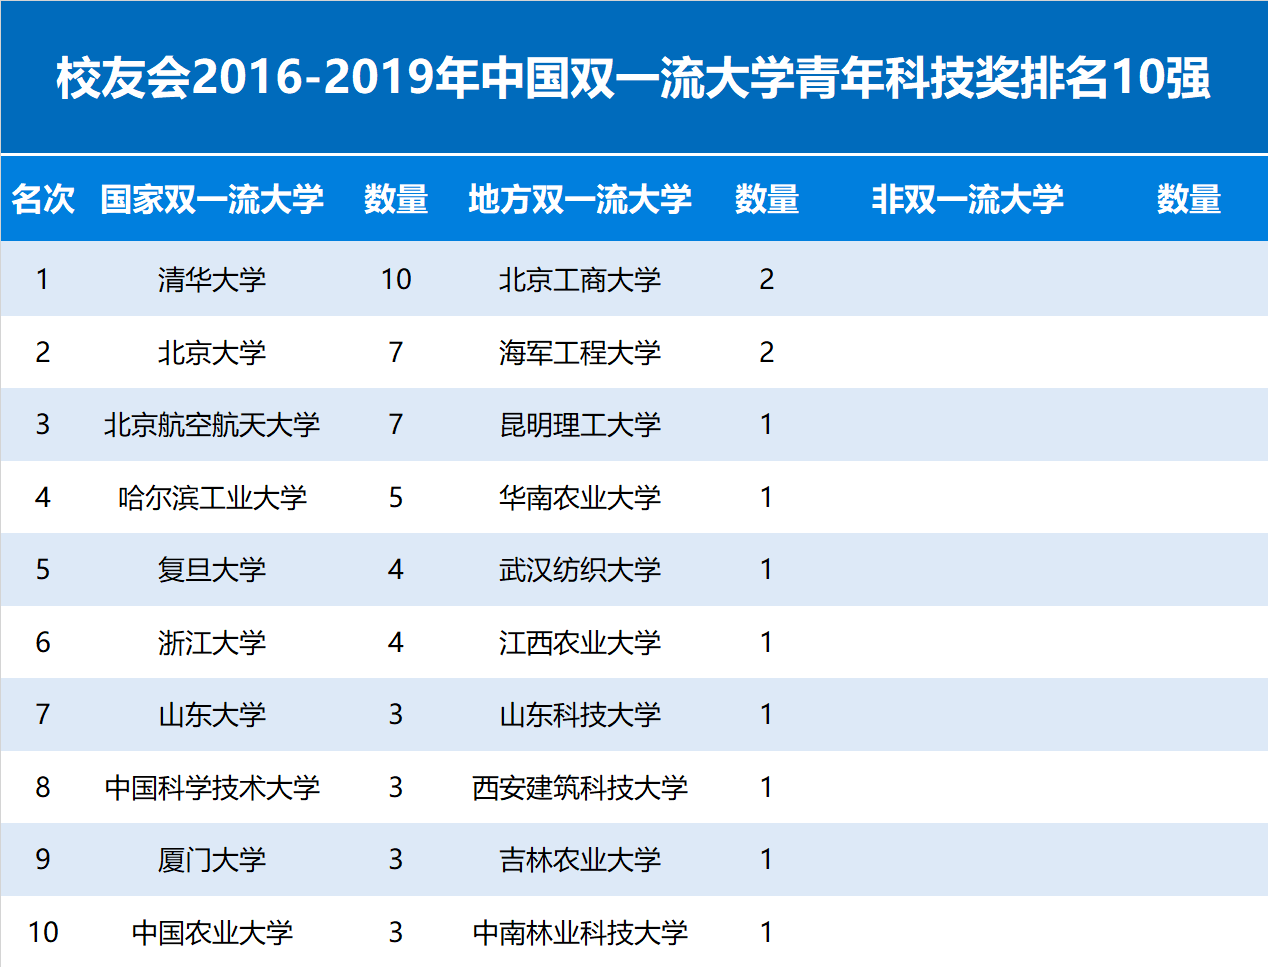 第五轮学科评估前瞻分析│2016-2019年中国大学青年科技奖排名，山东大学前七